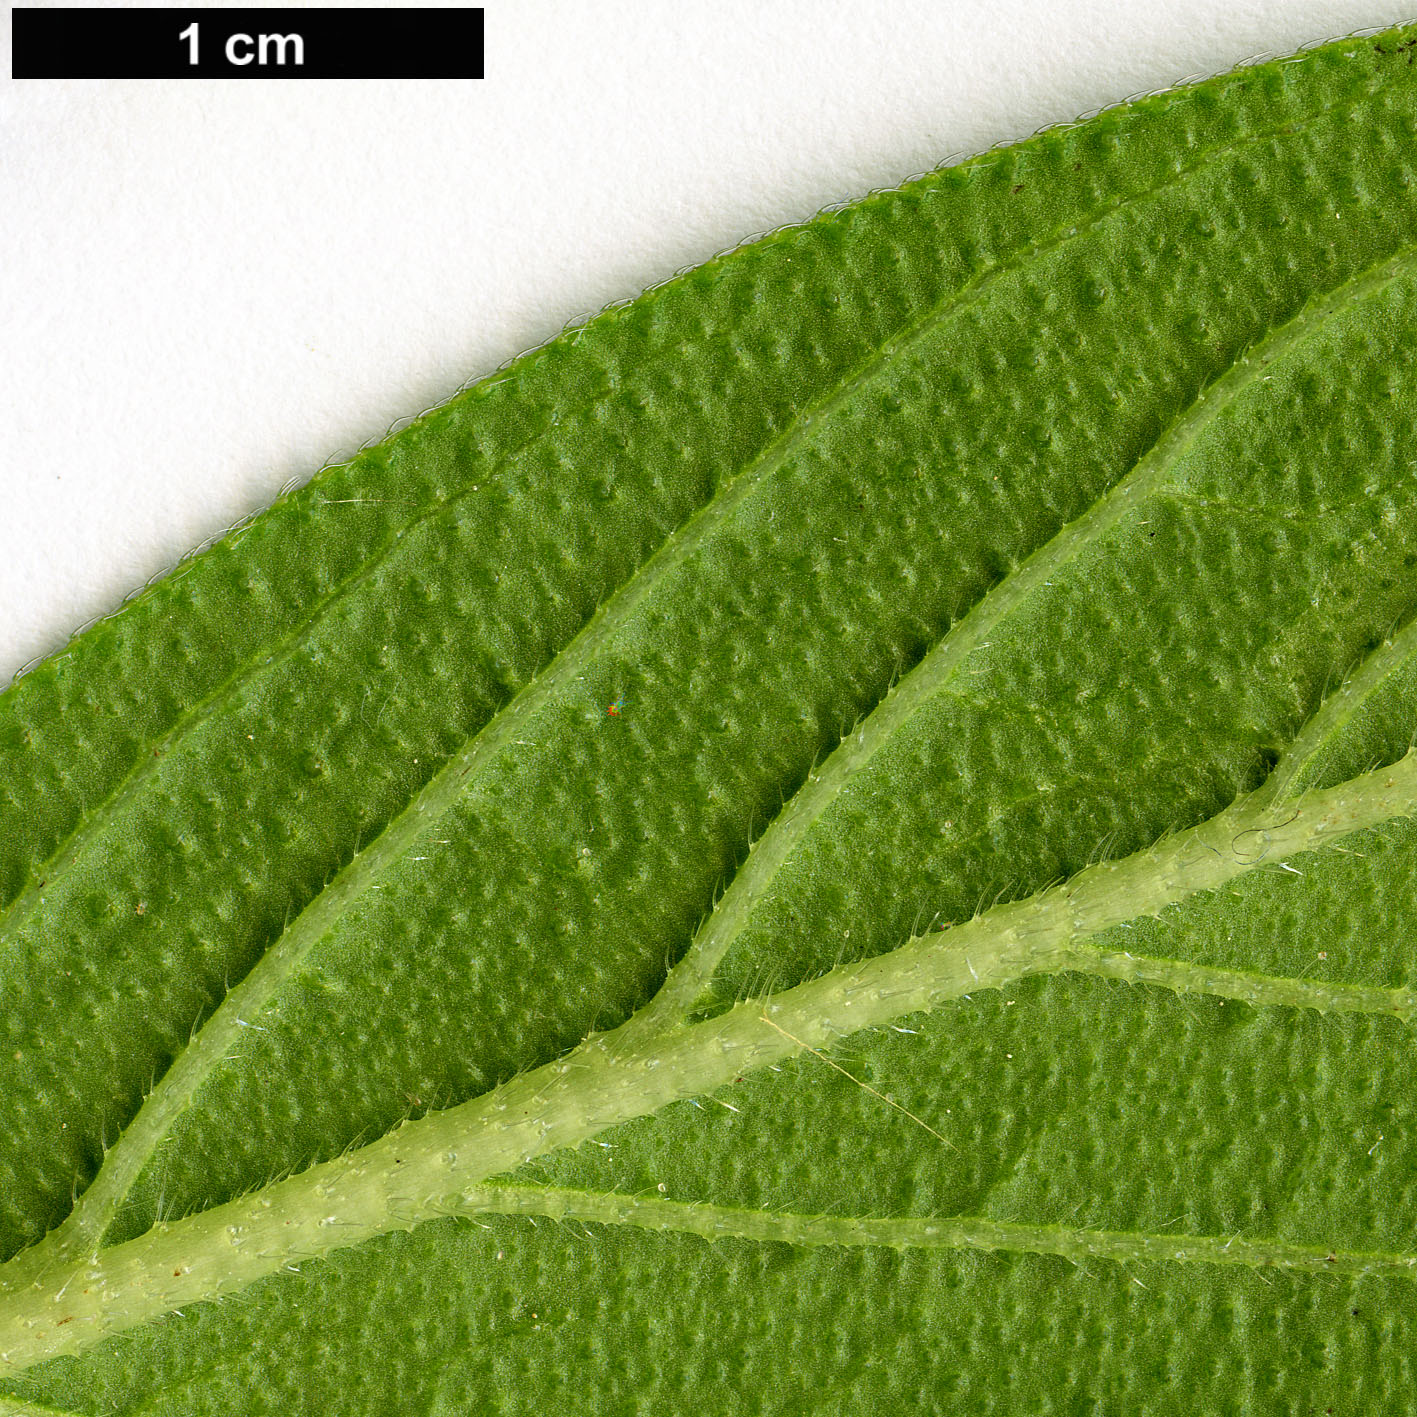 High resolution image: Family: Boraginaceae - Genus: Echium - Taxon: hypertropicum